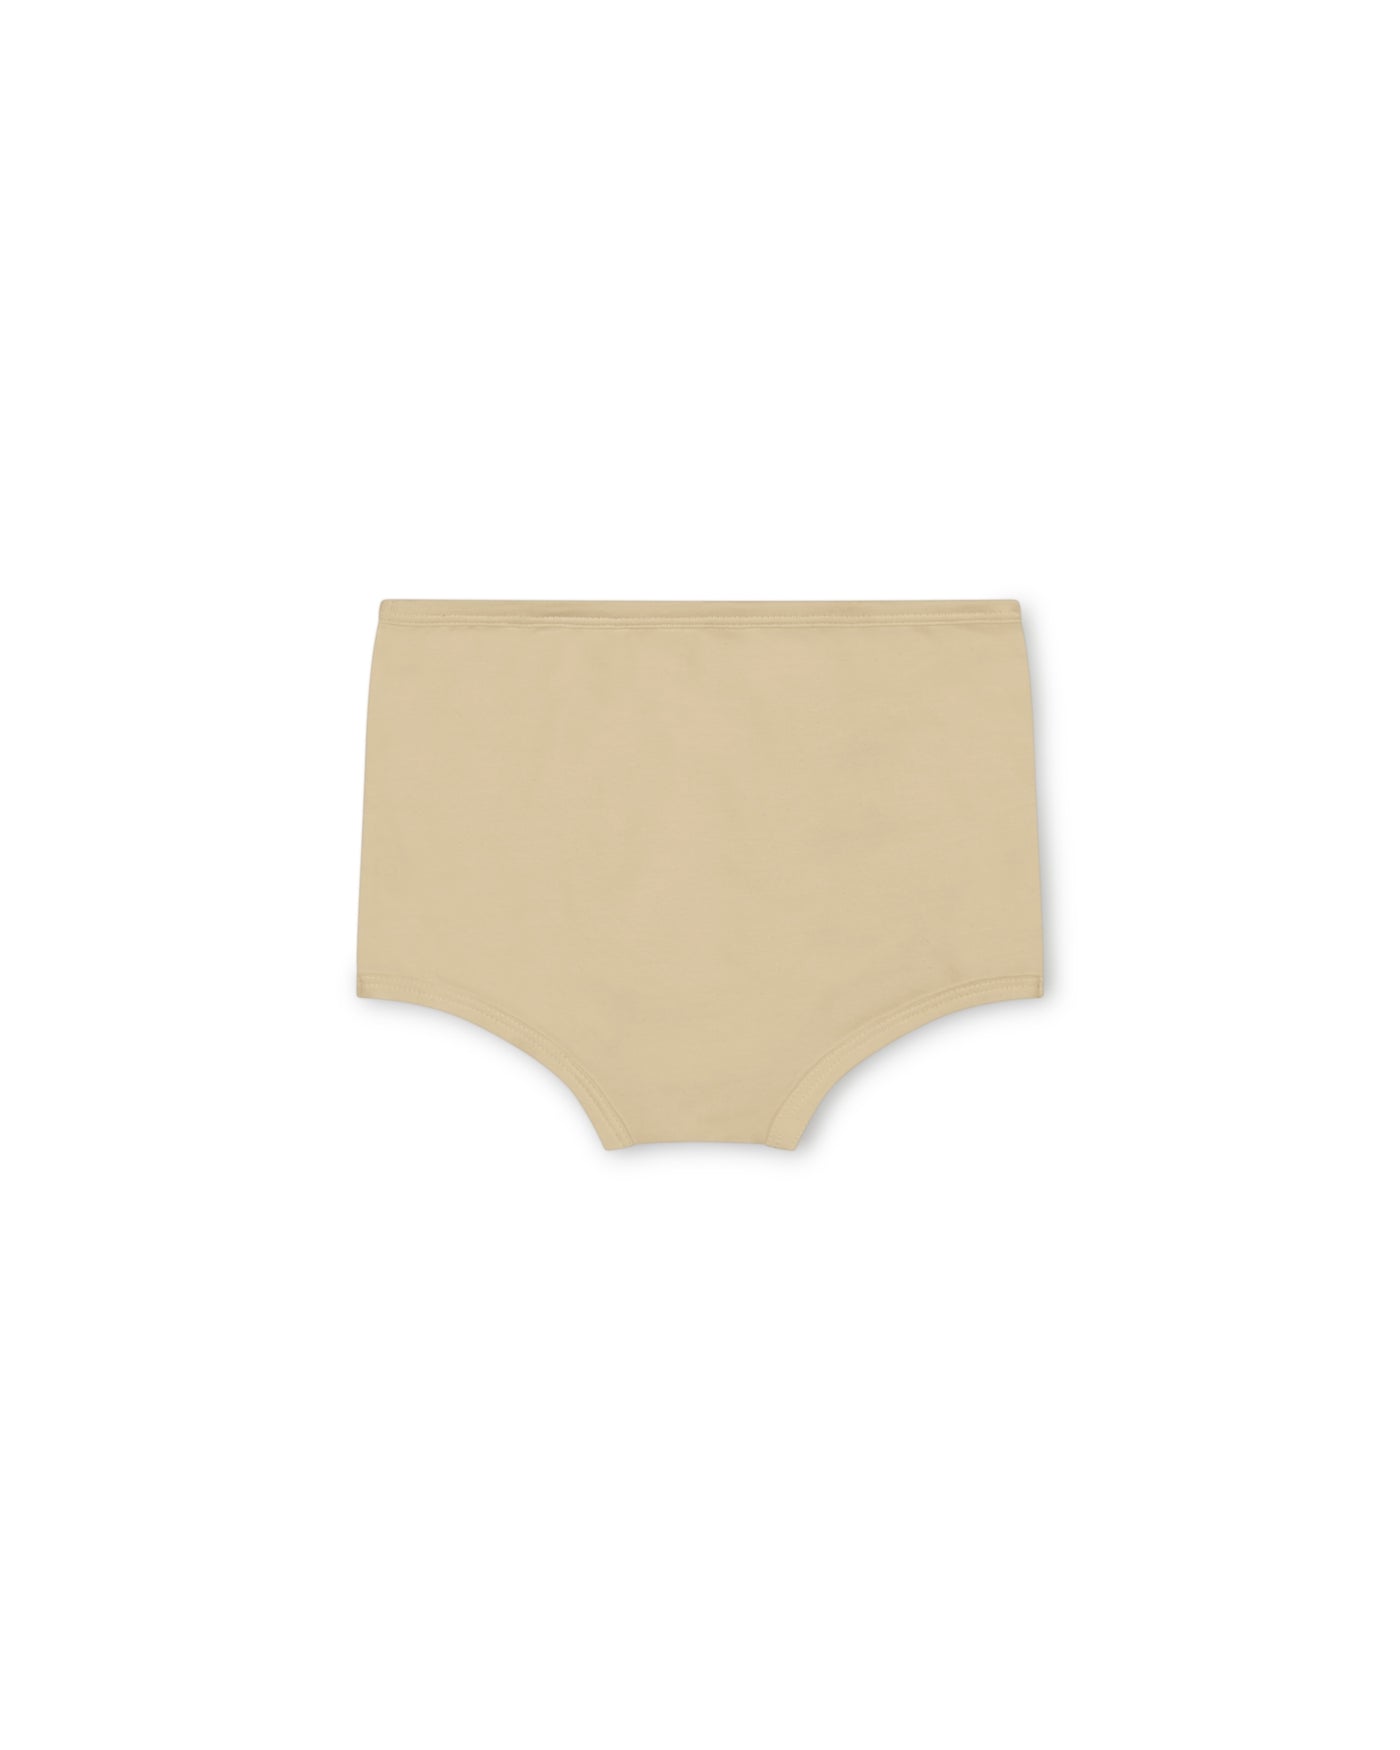 Matona - Basic undies light yellow / 1-2y